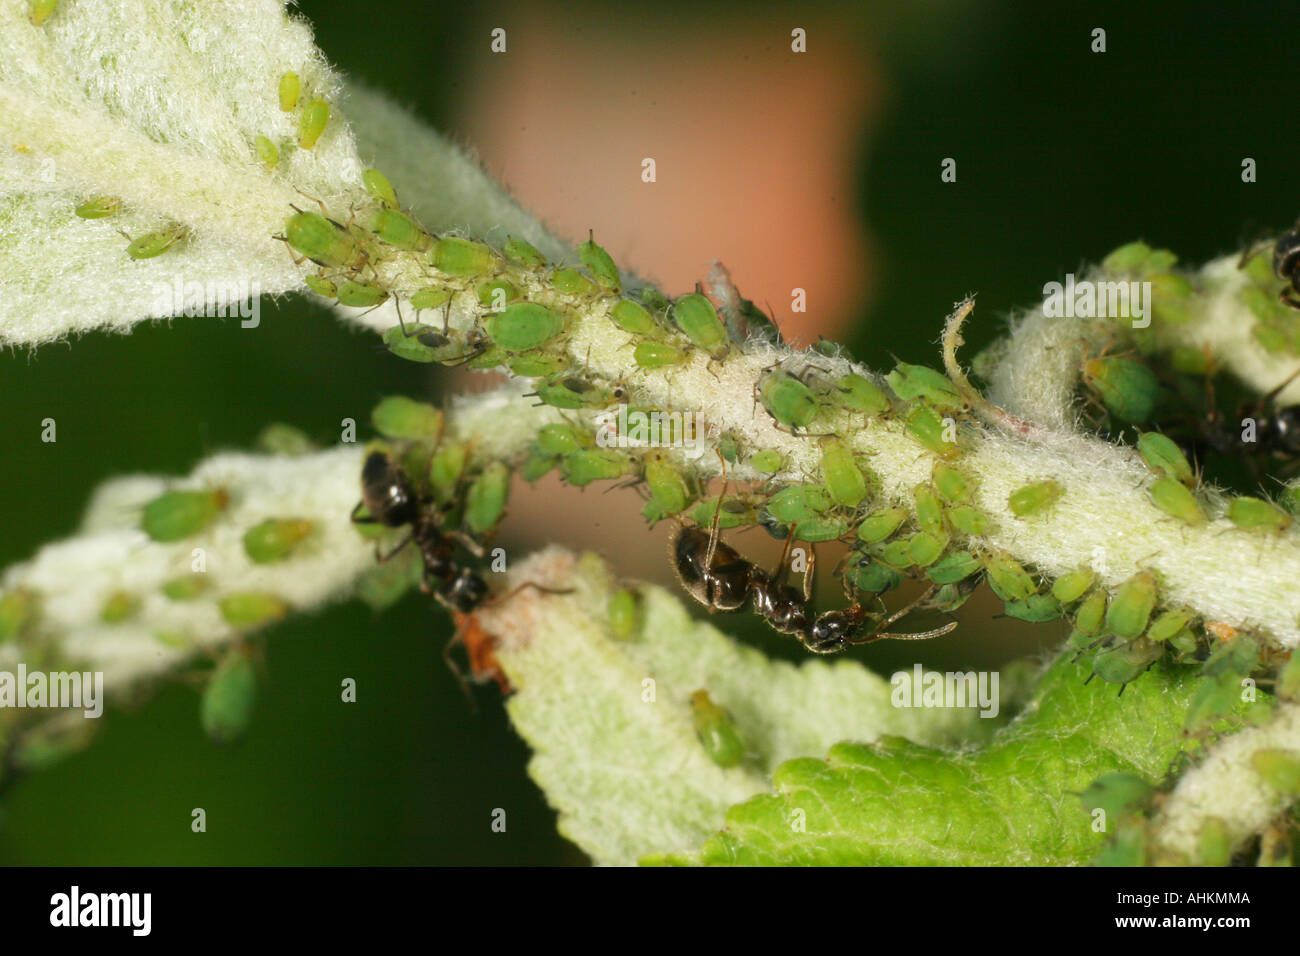 Ameisen Blattläuse für Honigtau auf einem Apfelbaum Landwirtschaft. Stockfoto